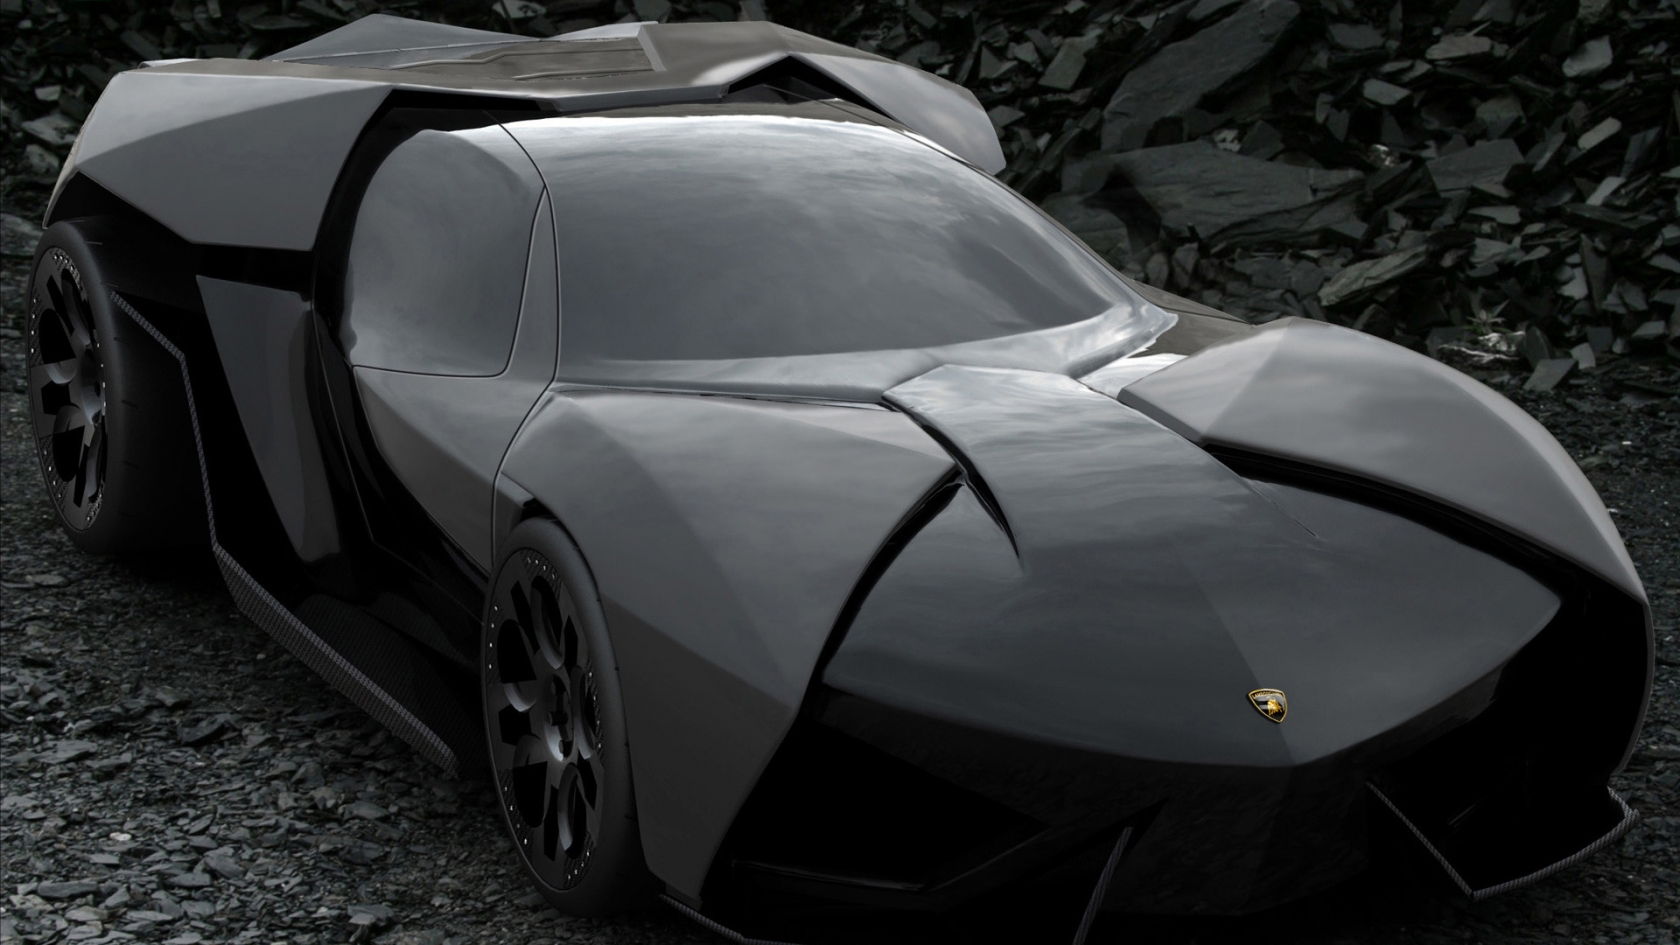 Lamborghini Ankonian Concept for 1680 x 945 HDTV resolution